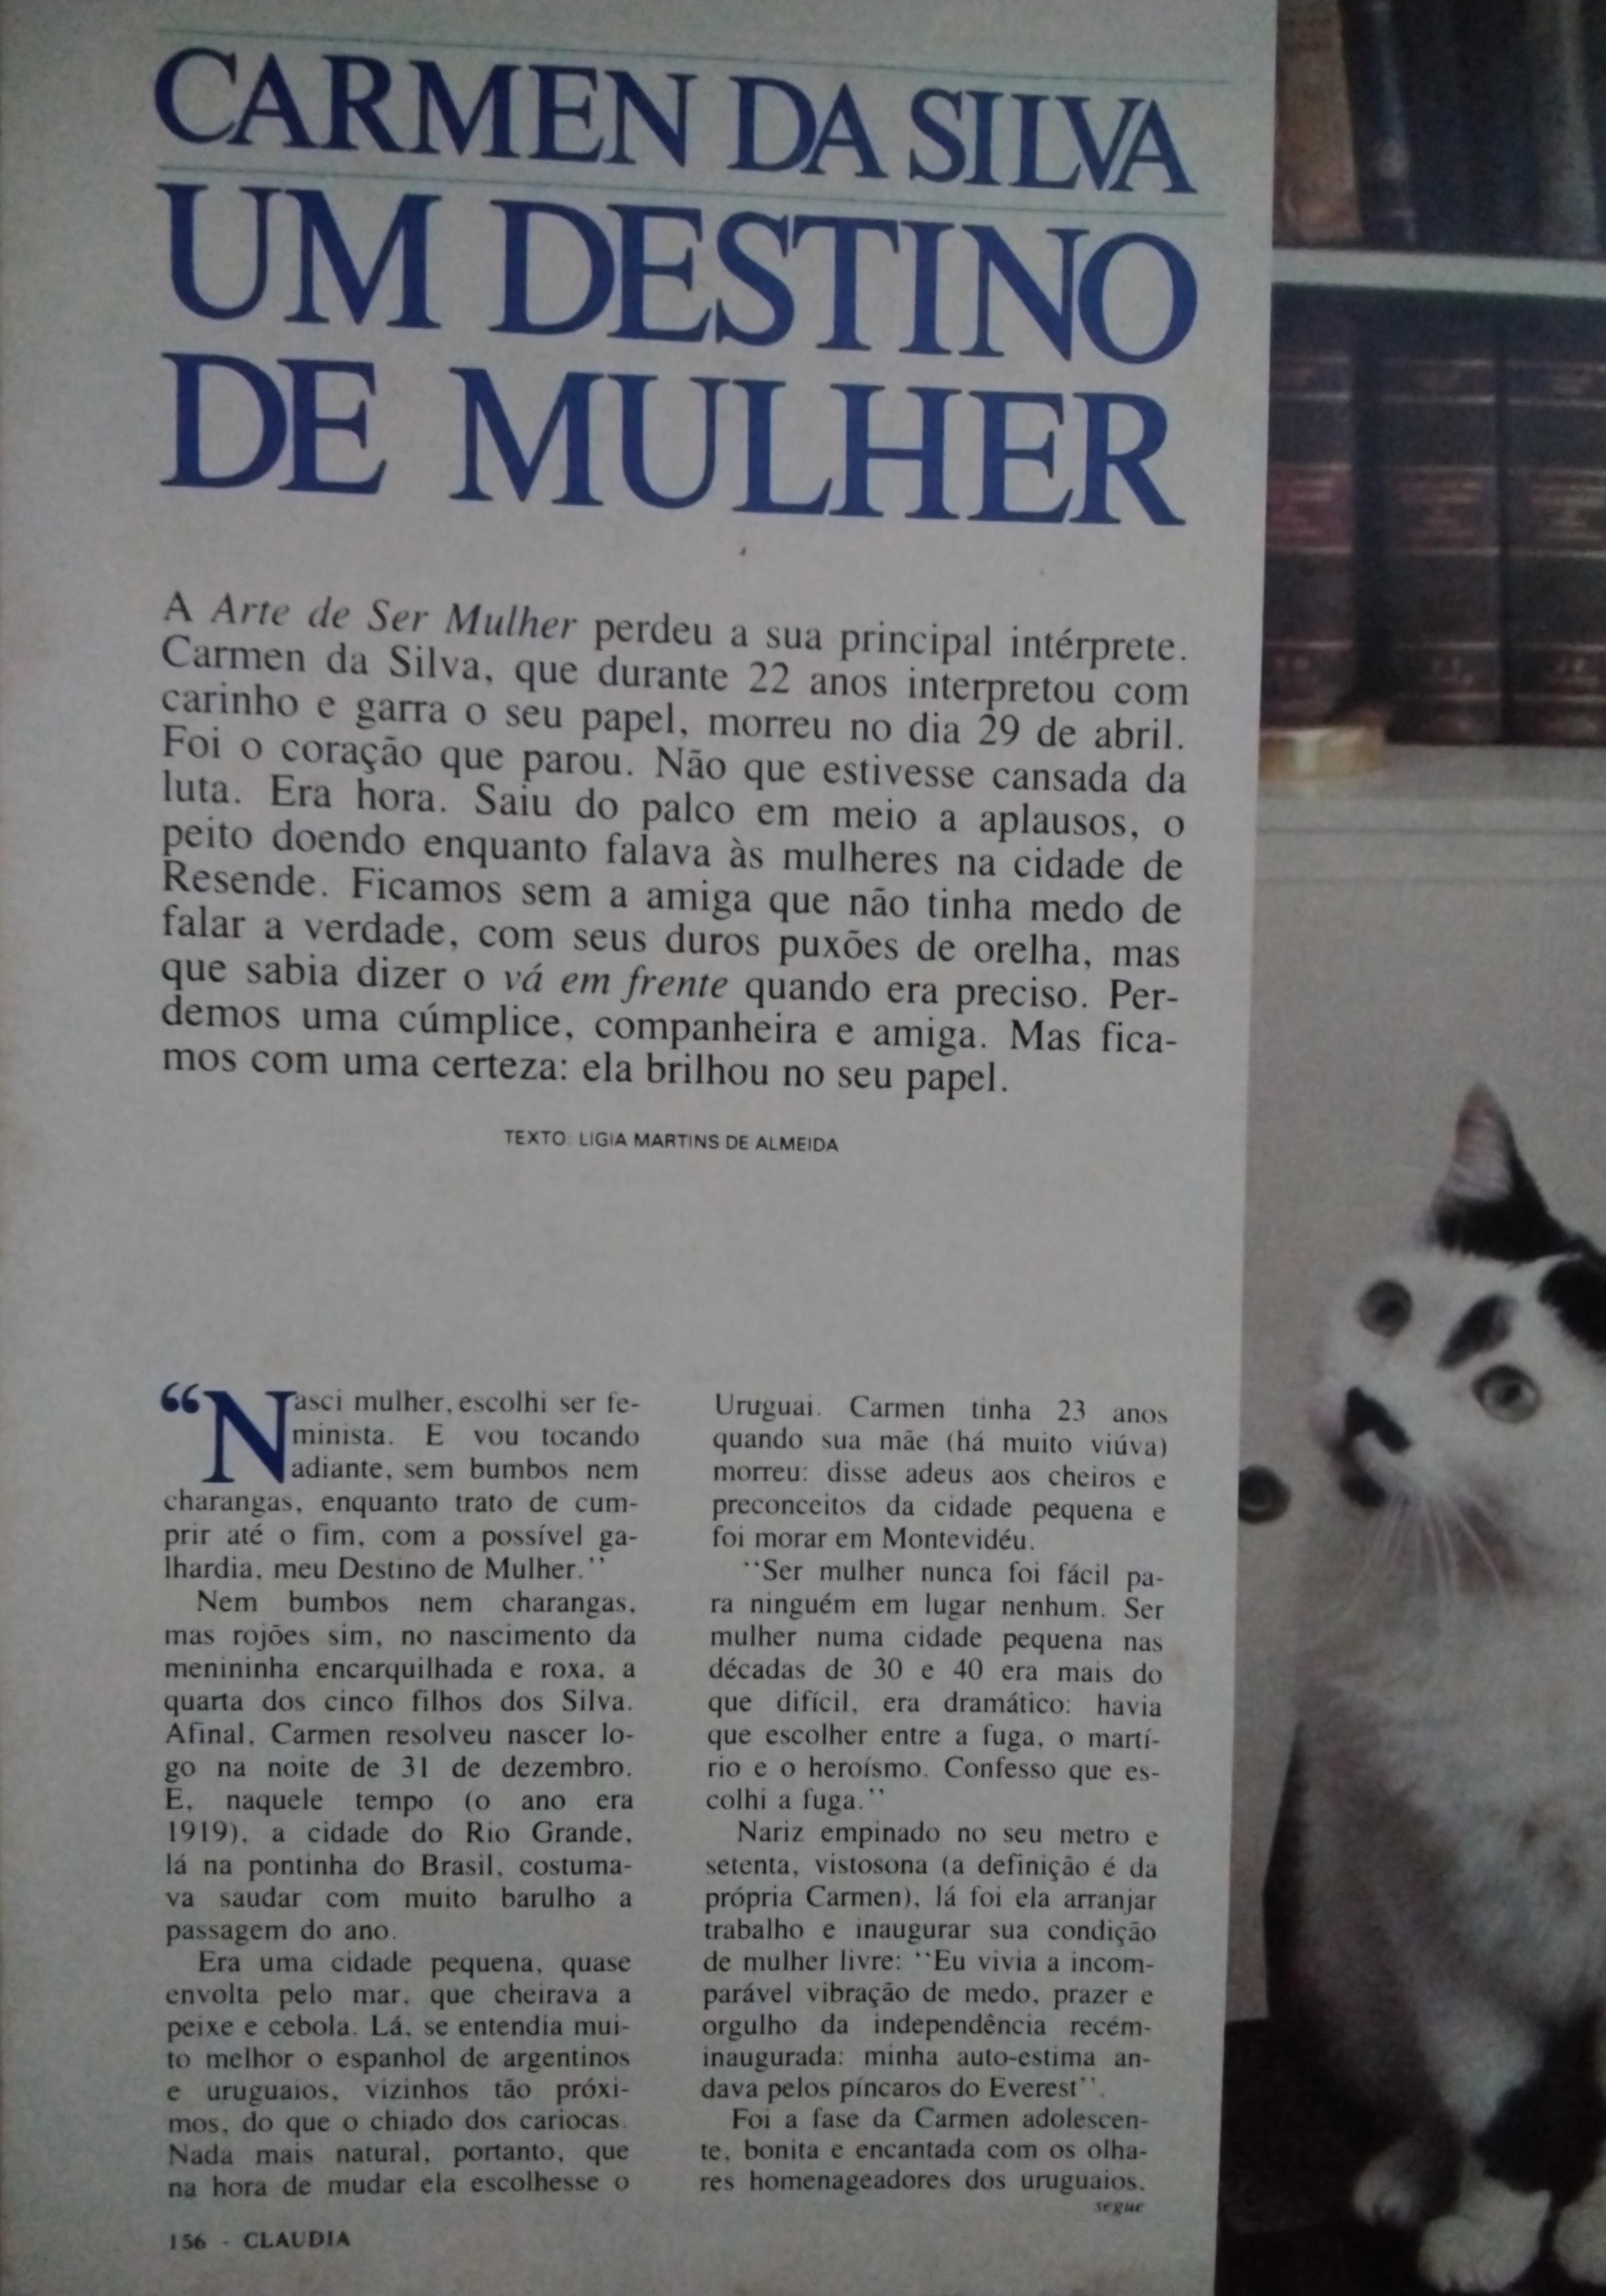 Revista Claudia, nº 285, junho de 1985. Pg. 156.